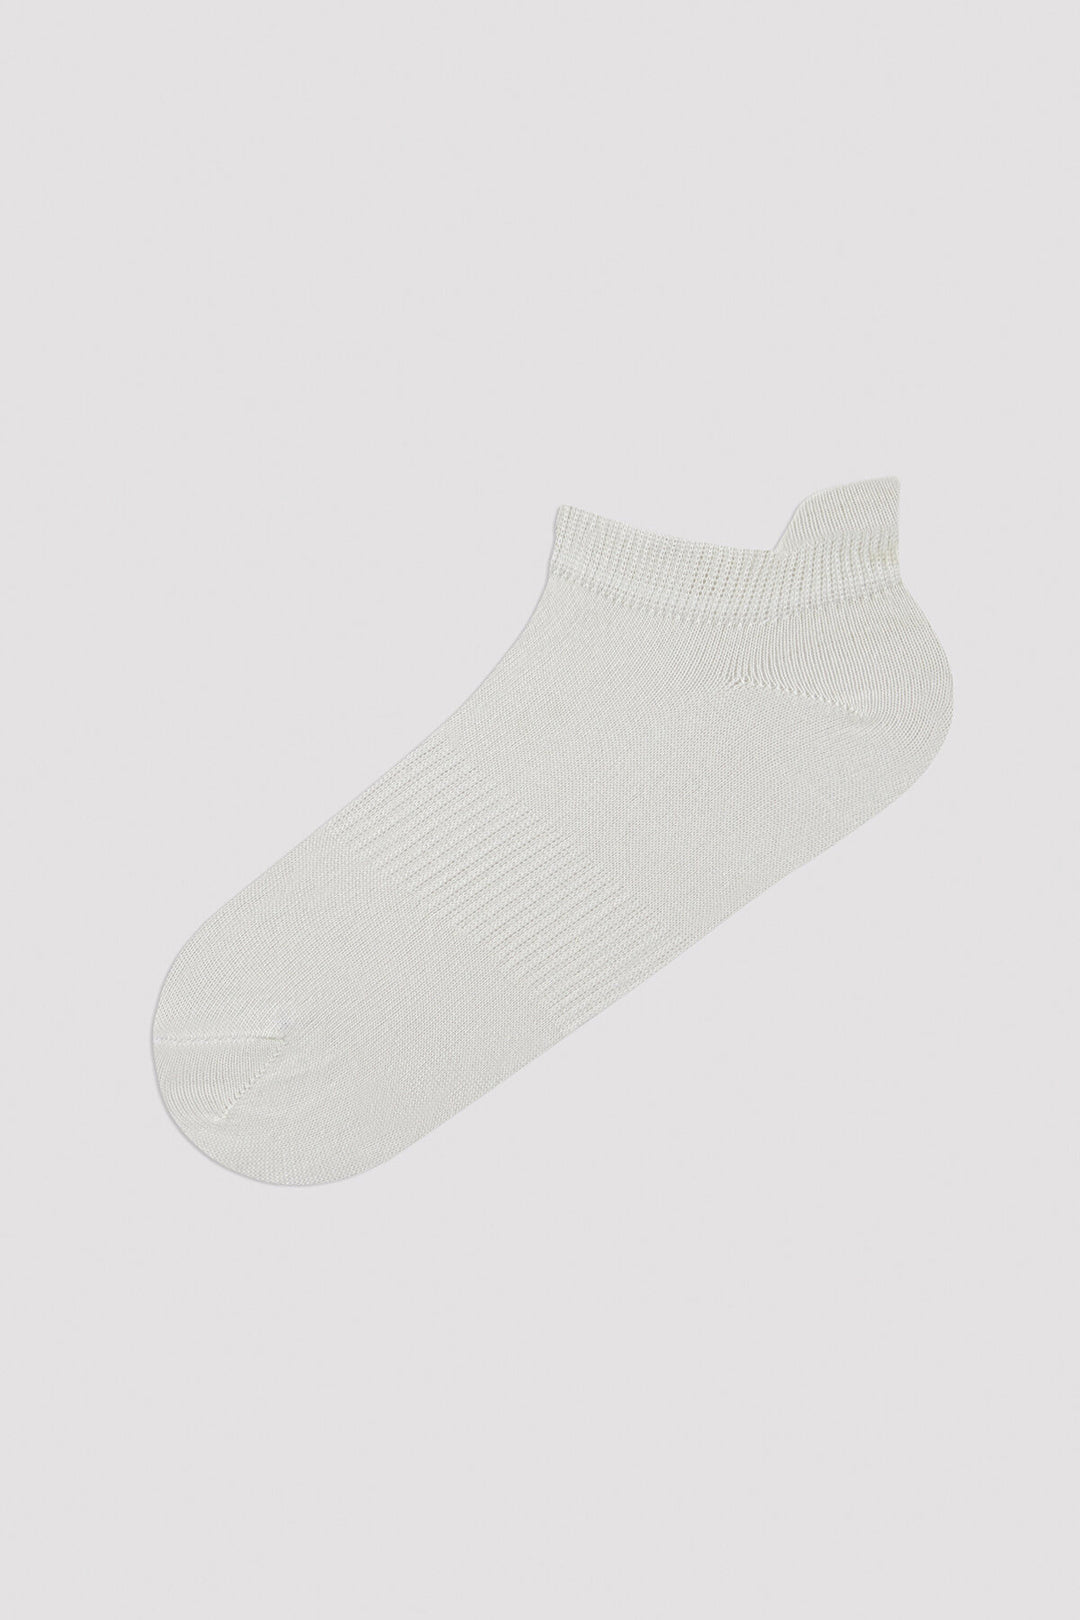 Rear Tab 2in1 White Liner Socks